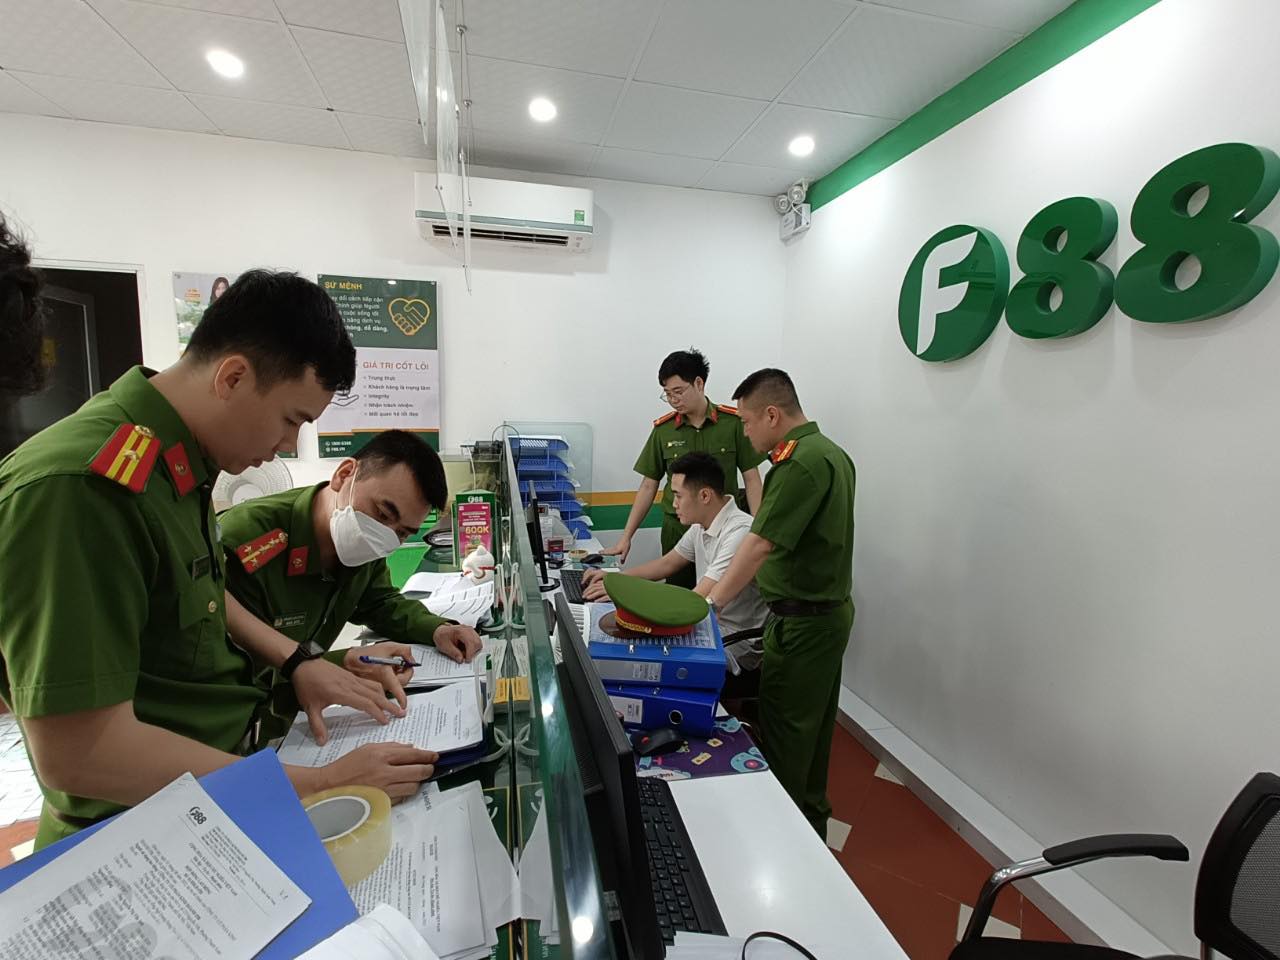 Tất cả địa điểm kinh doanh của F88 tại Bắc Giang bị kiểm tra hành chính - Ảnh 1.